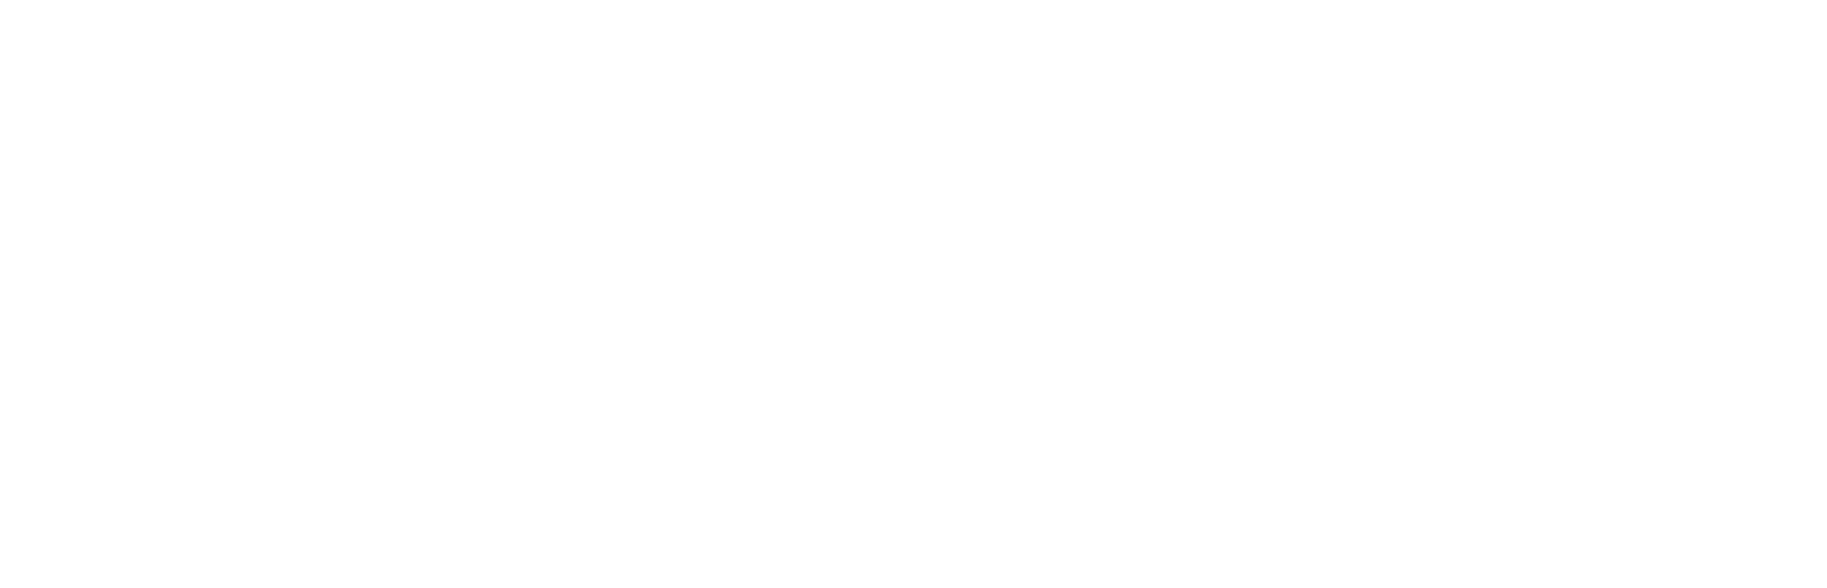 Torrid logo for dark backgrounds (transparent PNG)